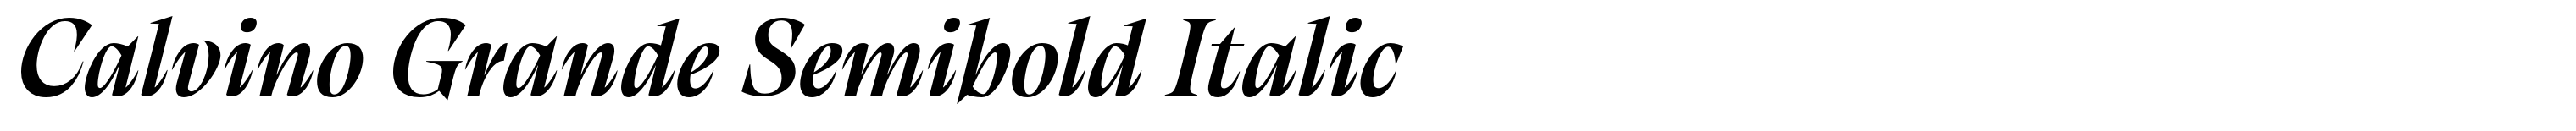 Calvino Grande Semibold Italic